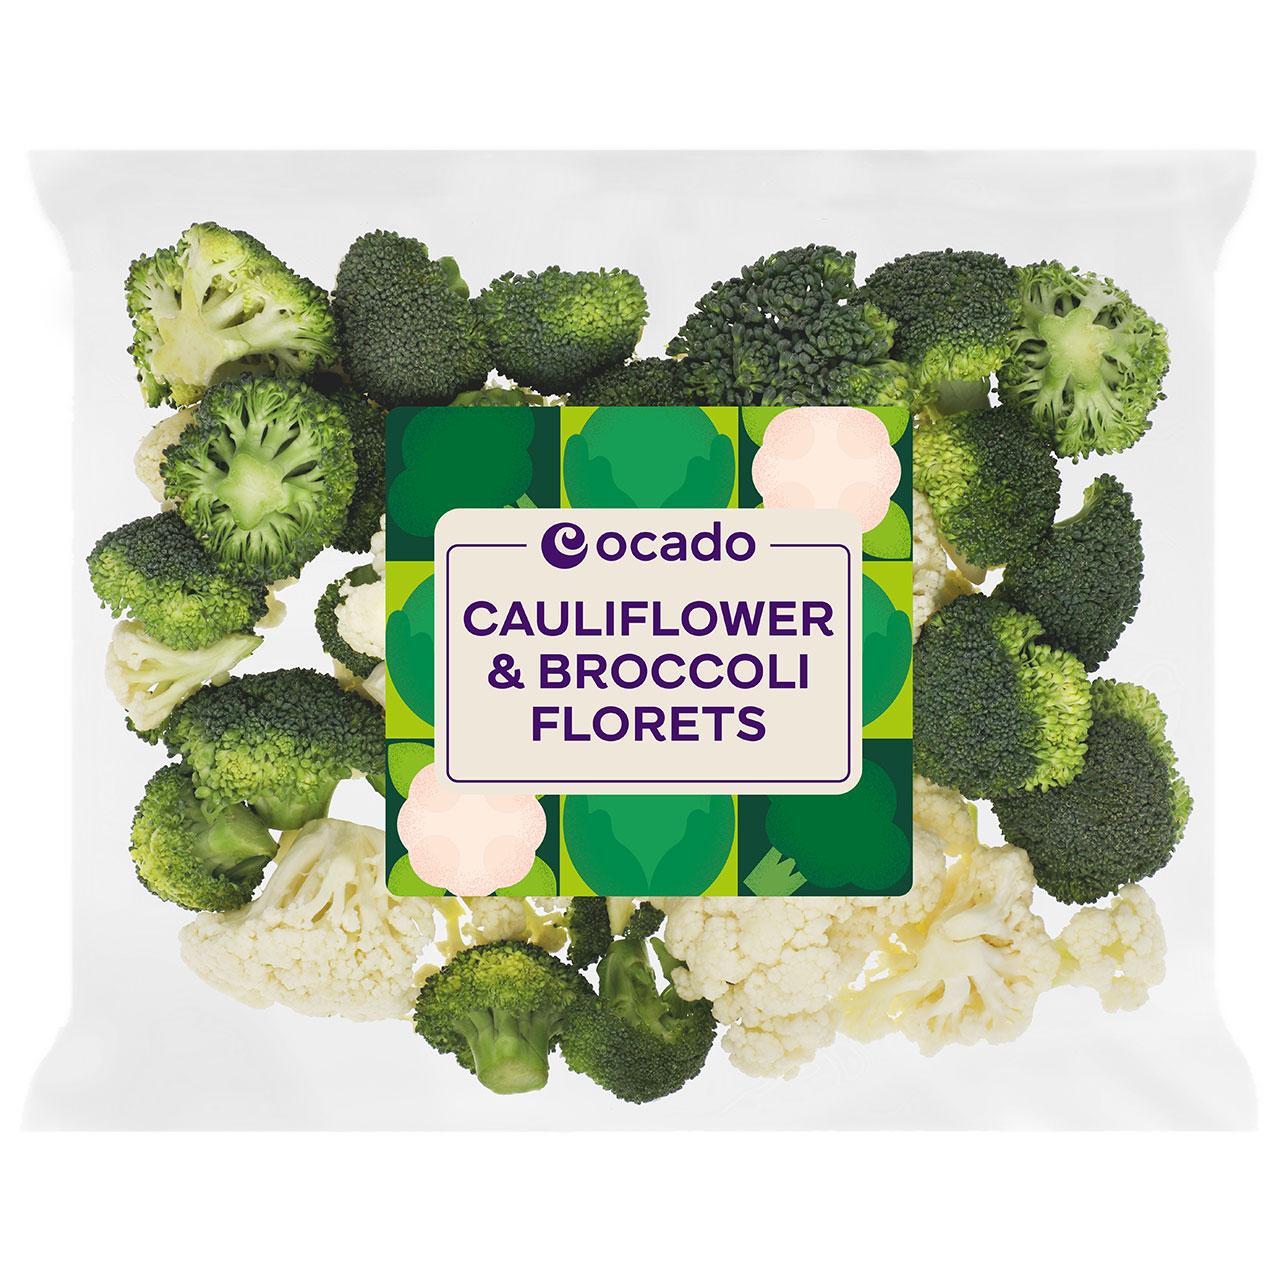 Ocado Cauliflower & Broccoli Florets 680g